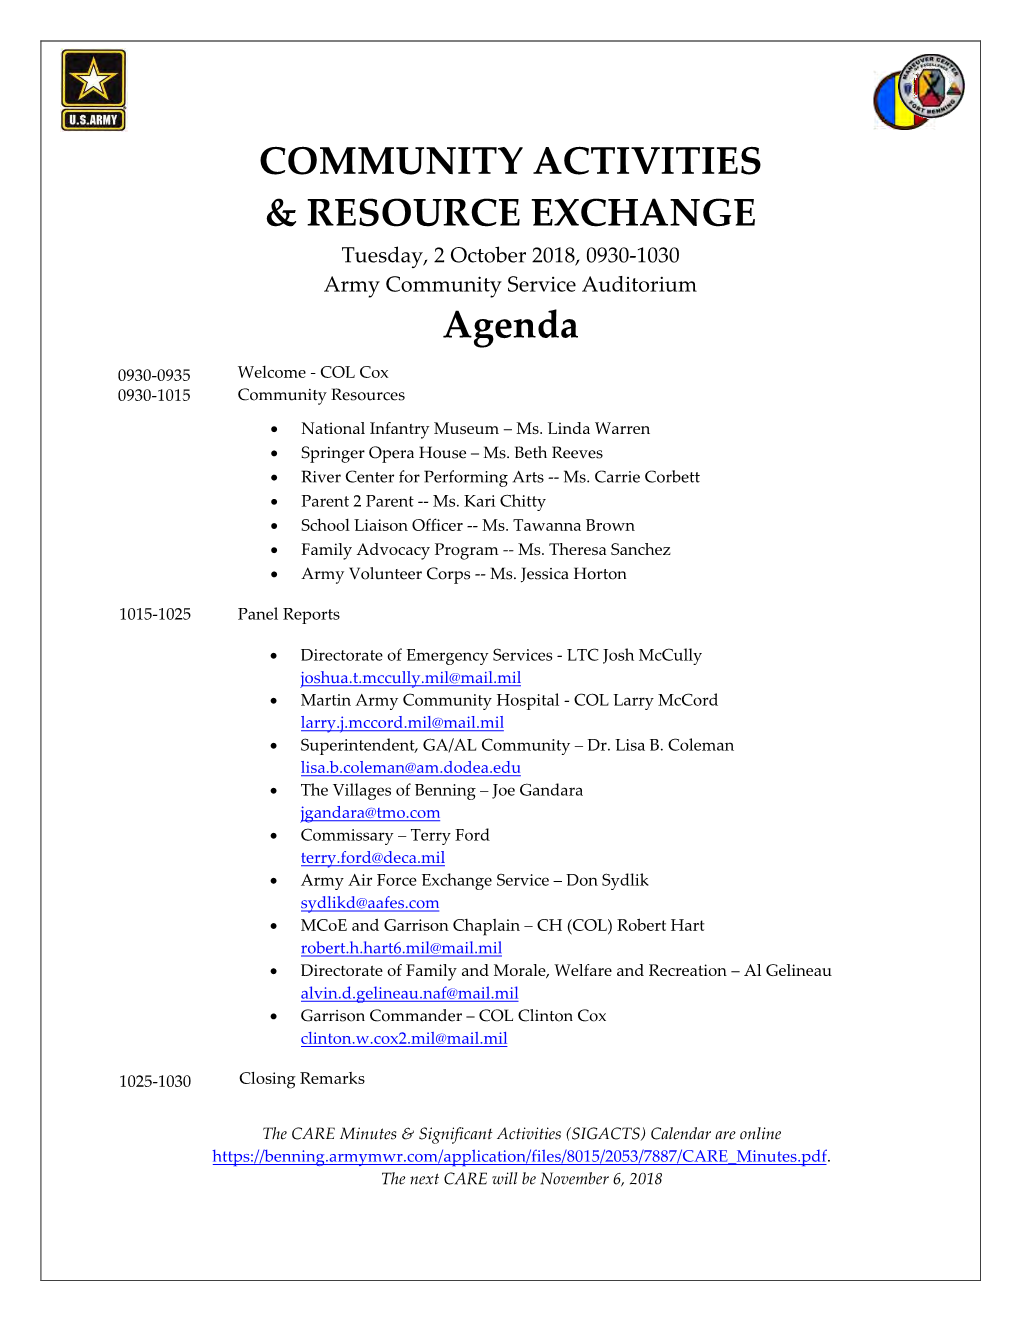 COMMUNITY ACTIVITIES & RESOURCE EXCHANGE Agenda